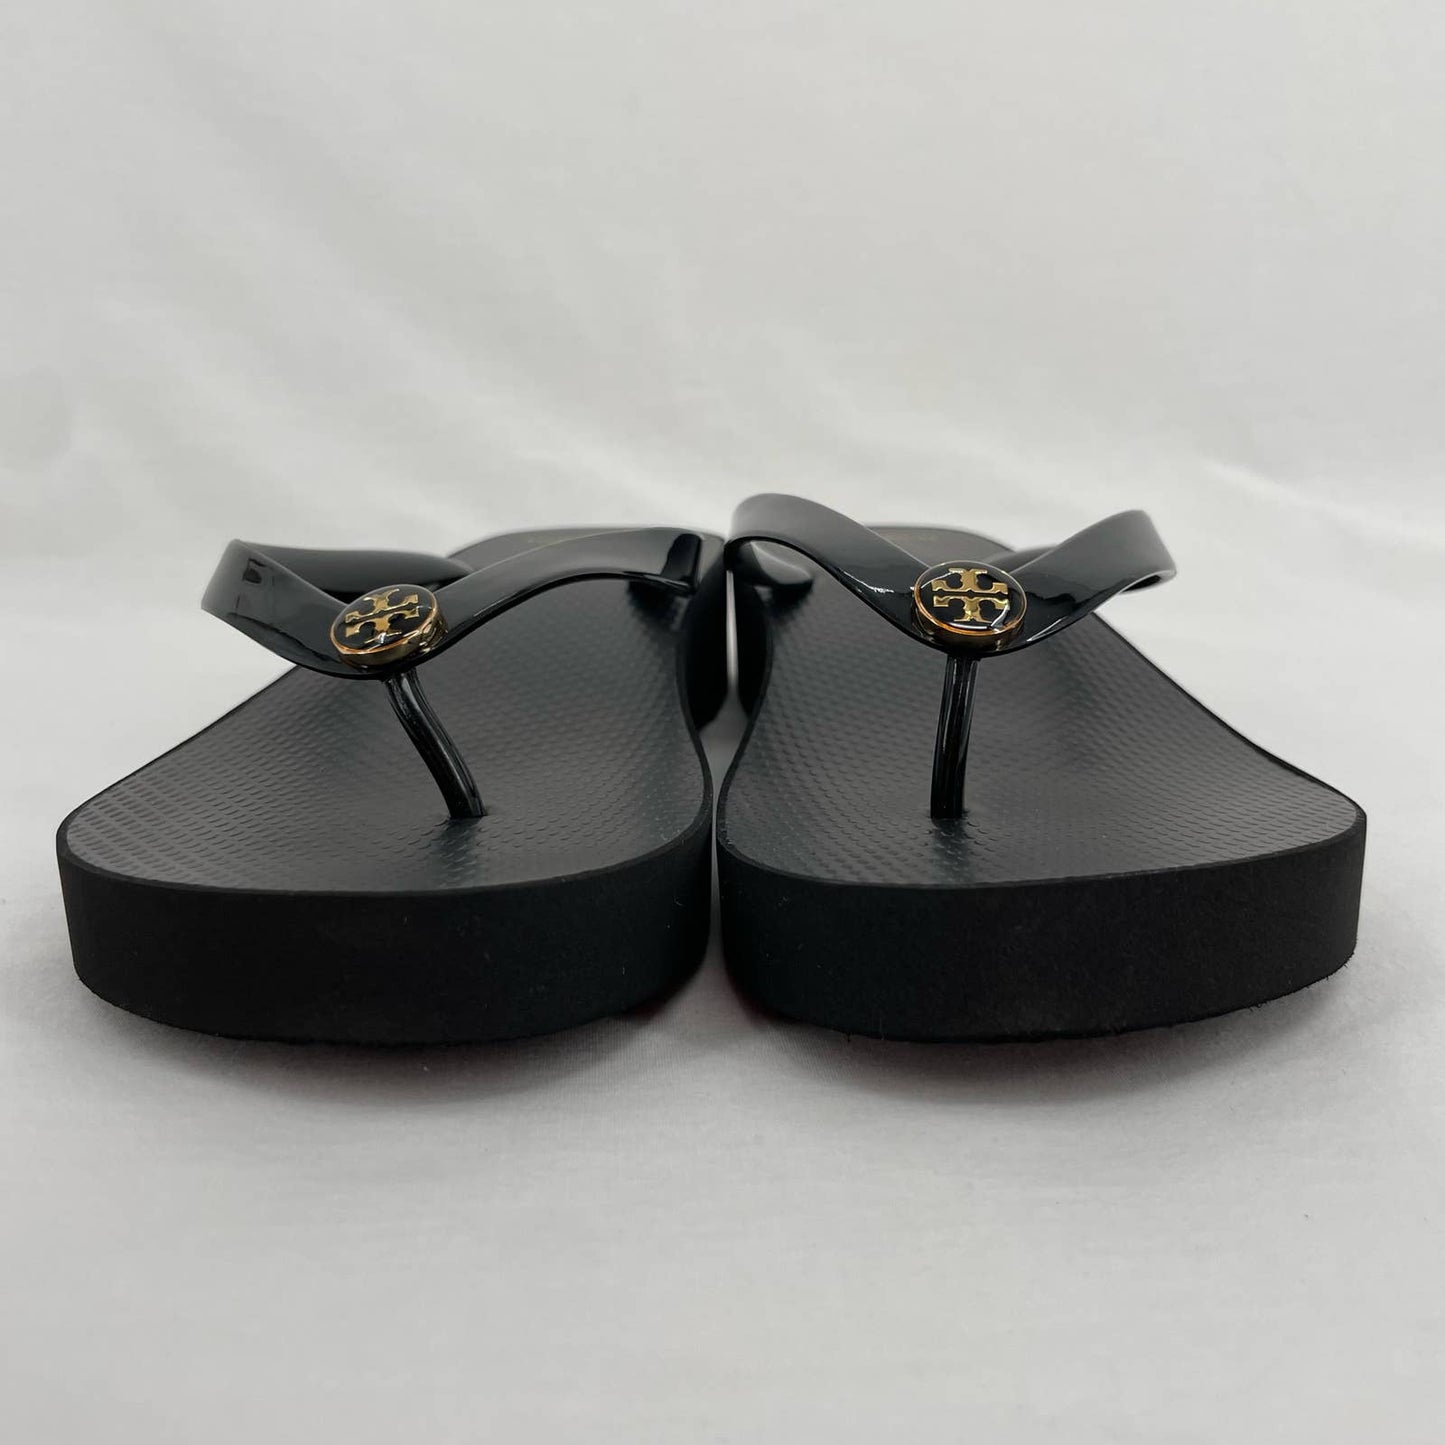 Tory Burch Cut Out Wedge Flip Flop Black Platform Thong Sandals Summer Beach Size 11